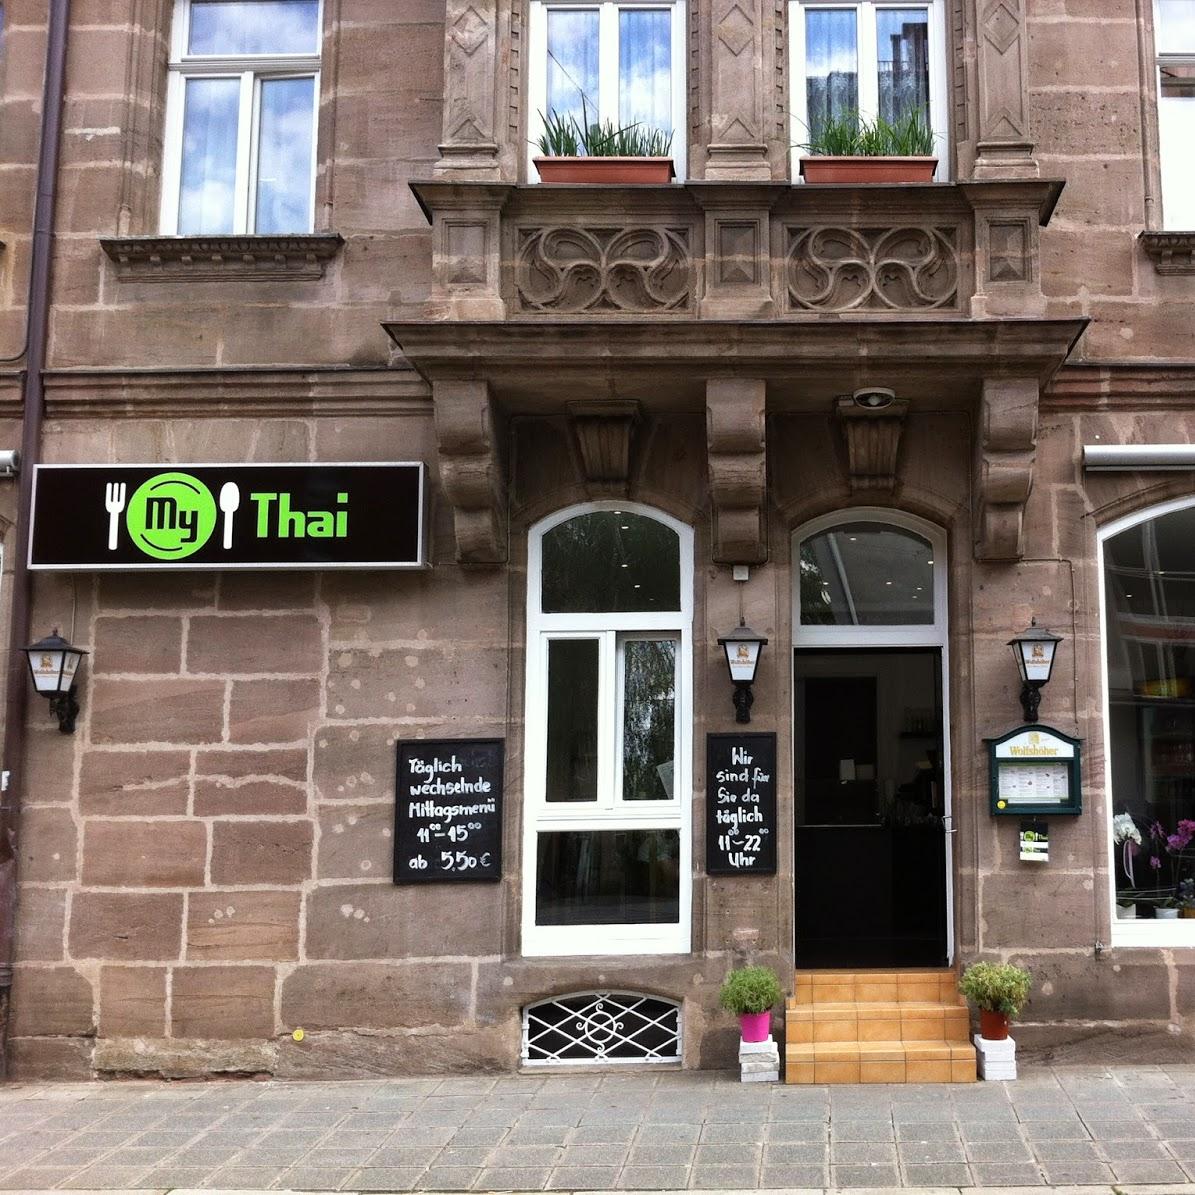 Restaurant "My Thai Restaurant" in Nürnberg